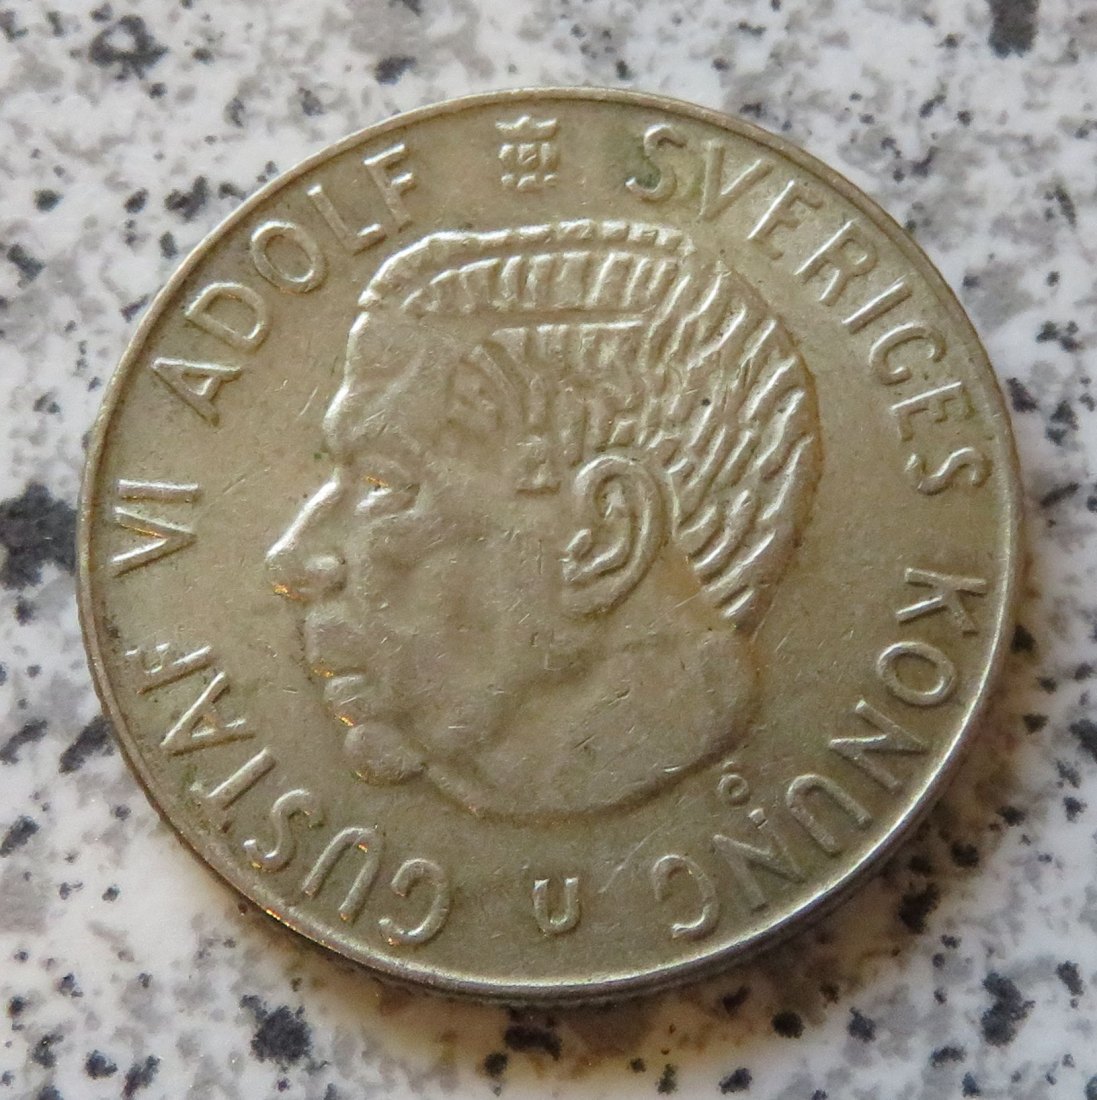  Schweden 1 Krona 1967   